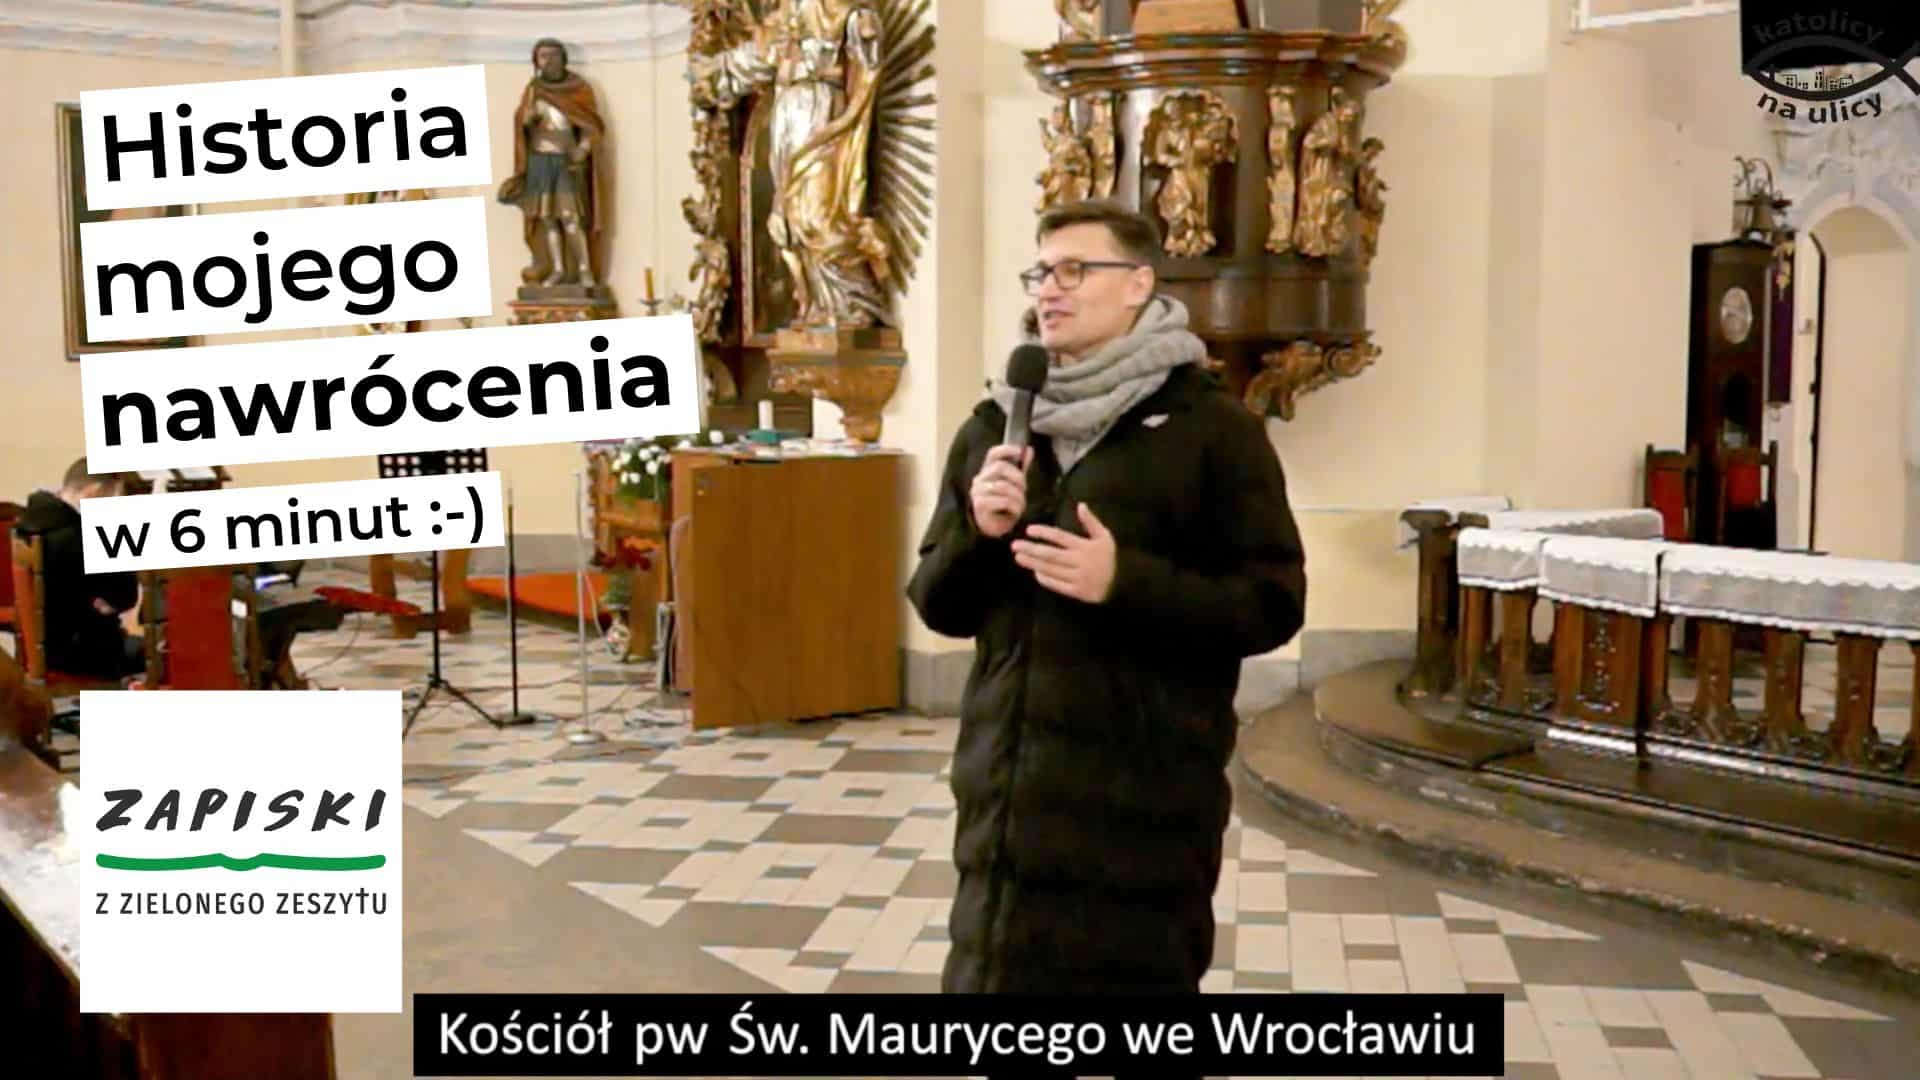 Historia mojego nawrócenia (w 6 minut) - Wydarzenie Nieznanemu Bogu - kościół pw św. Maurycego we Wrocławiu